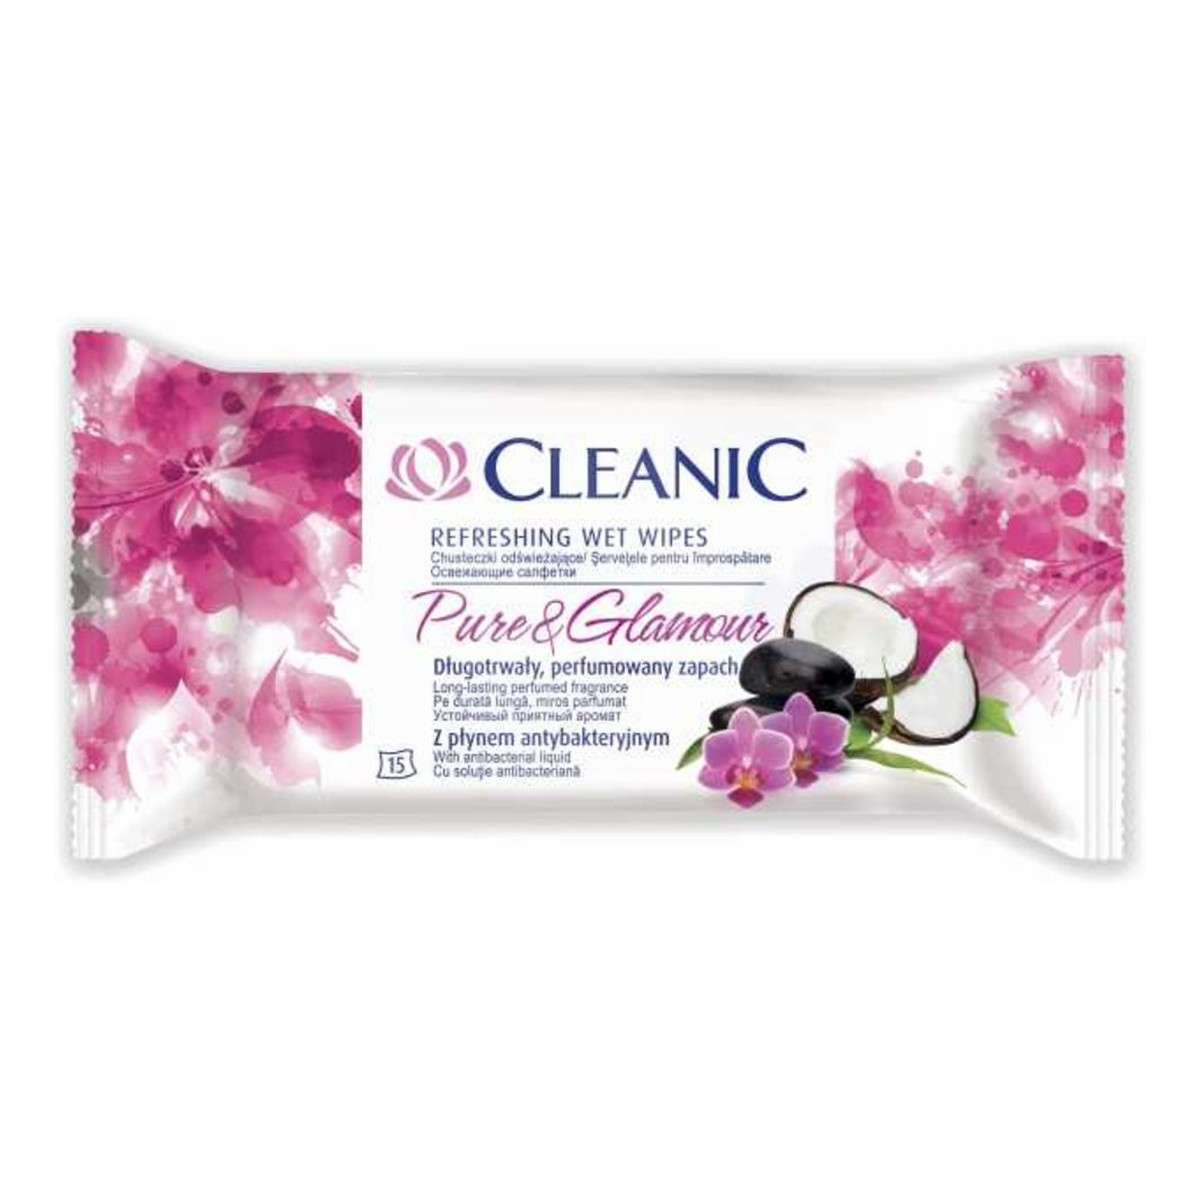 Cleanic Refreshing Wet Wipes Chusteczki Odświeżające Pure & Glamour 15 szt. z Płynem Antybakteryjnym